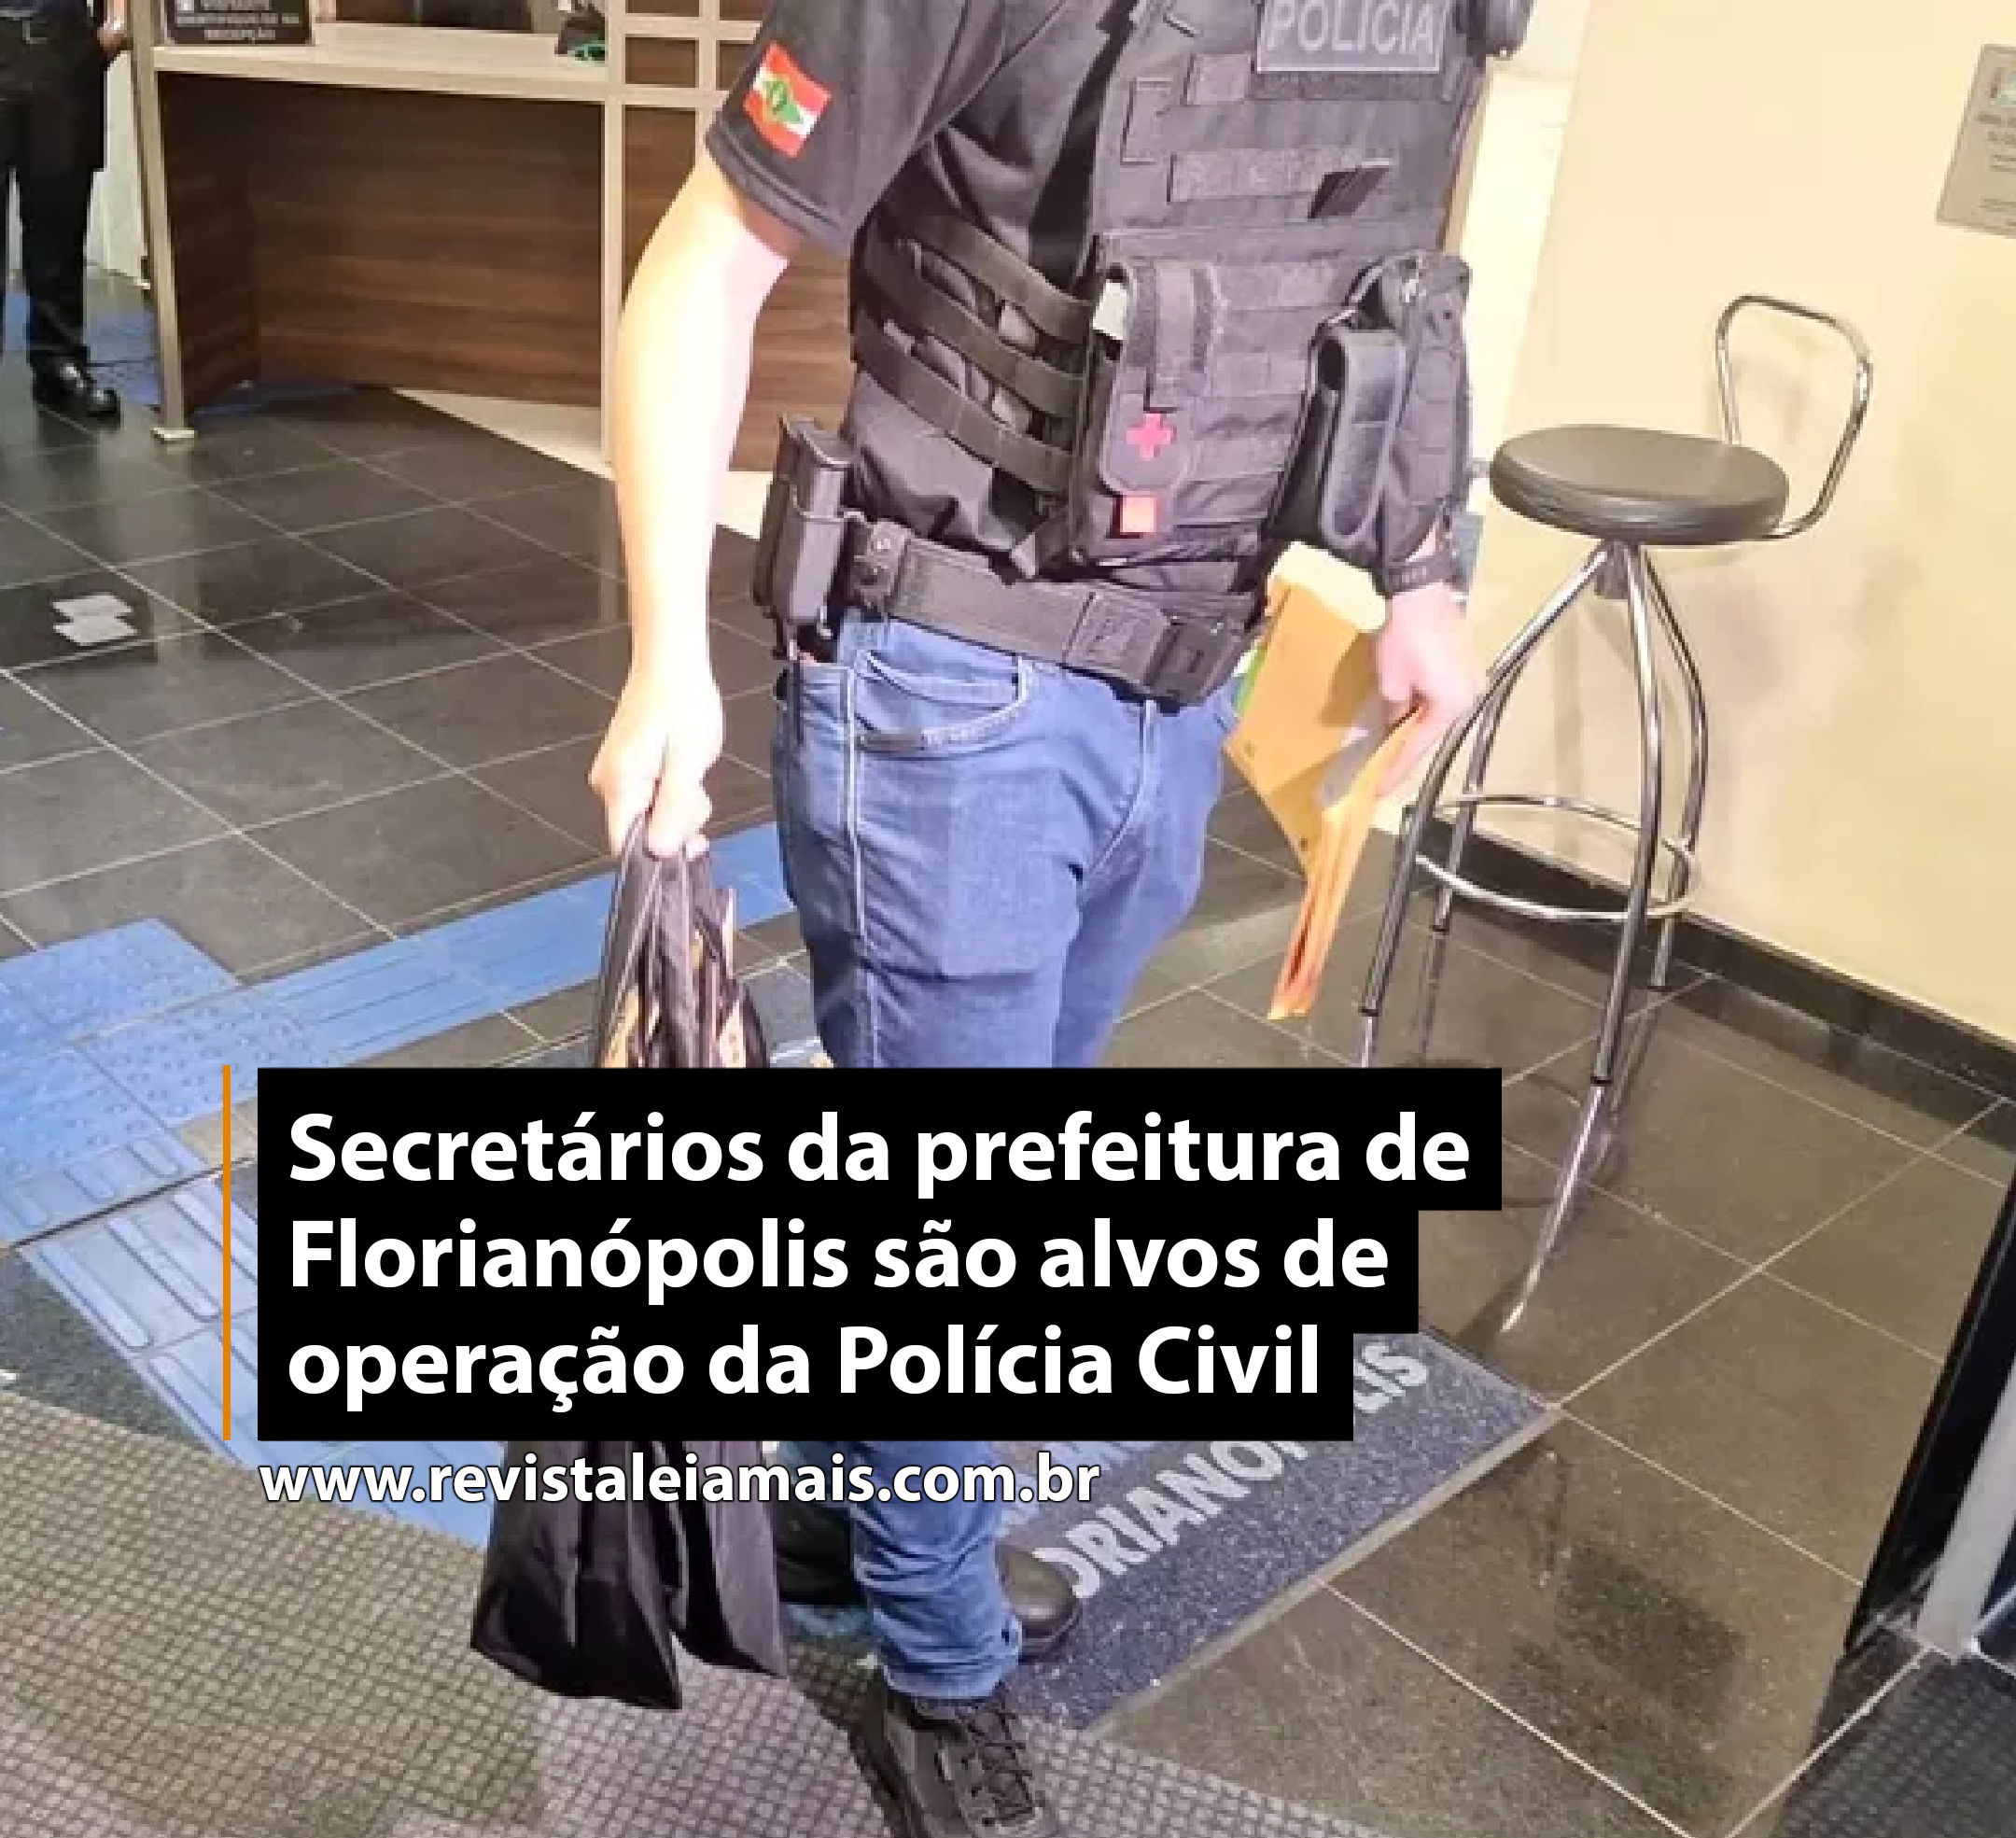 Secretários da prefeitura de Florianópolis são alvos de operação da Polícia Civil